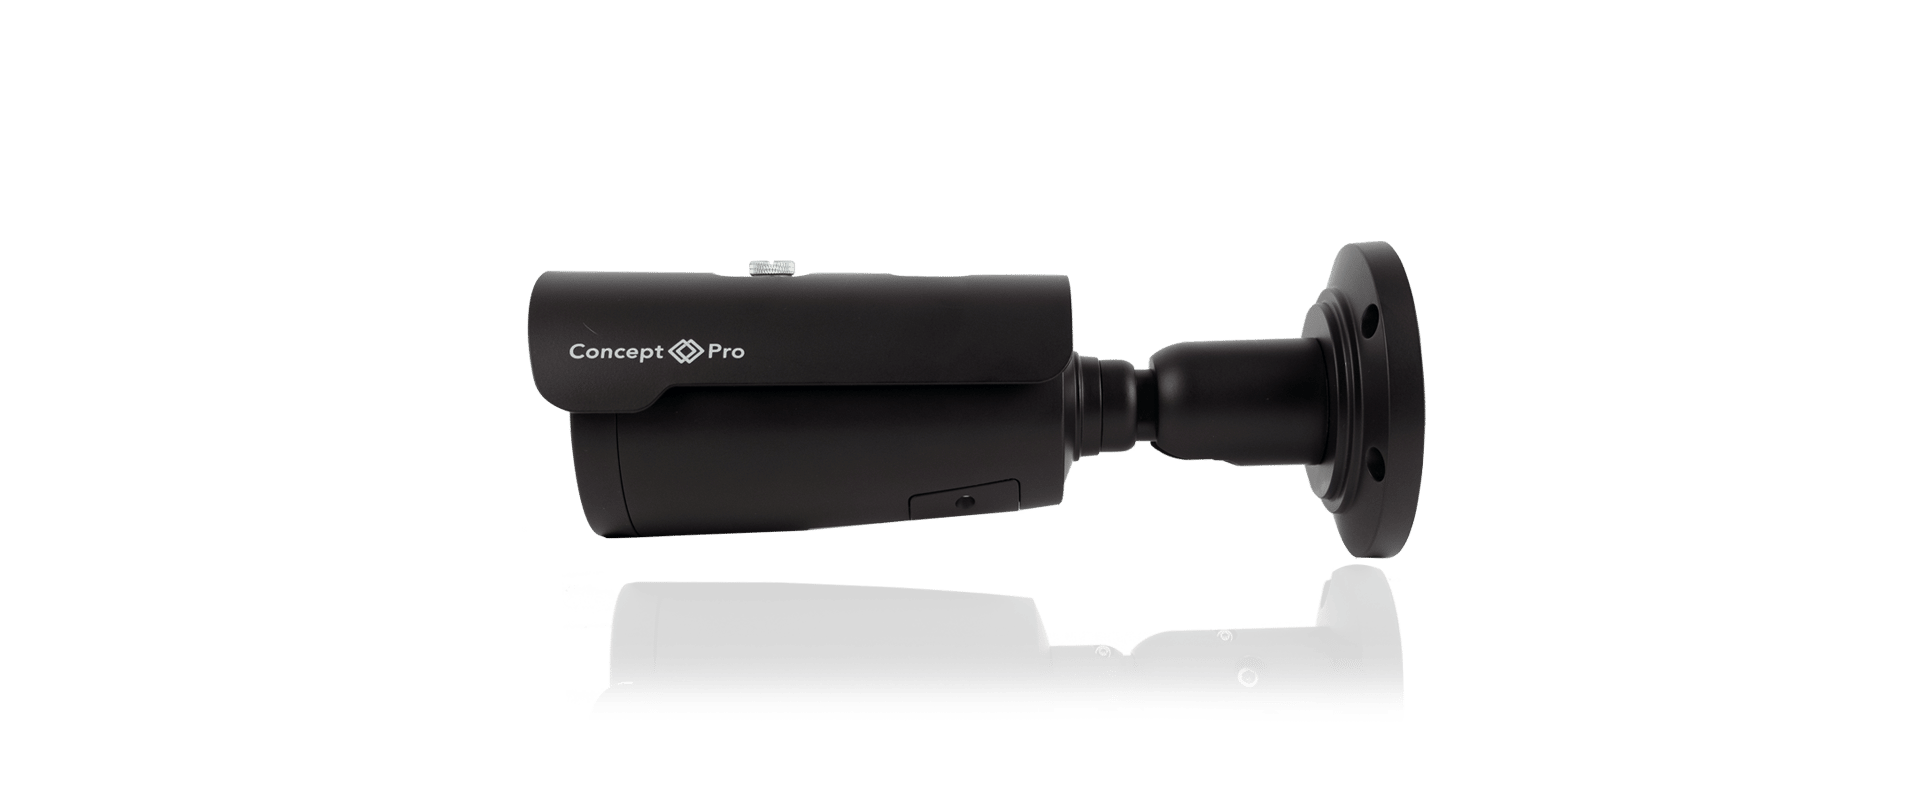 varifocal bullet camera